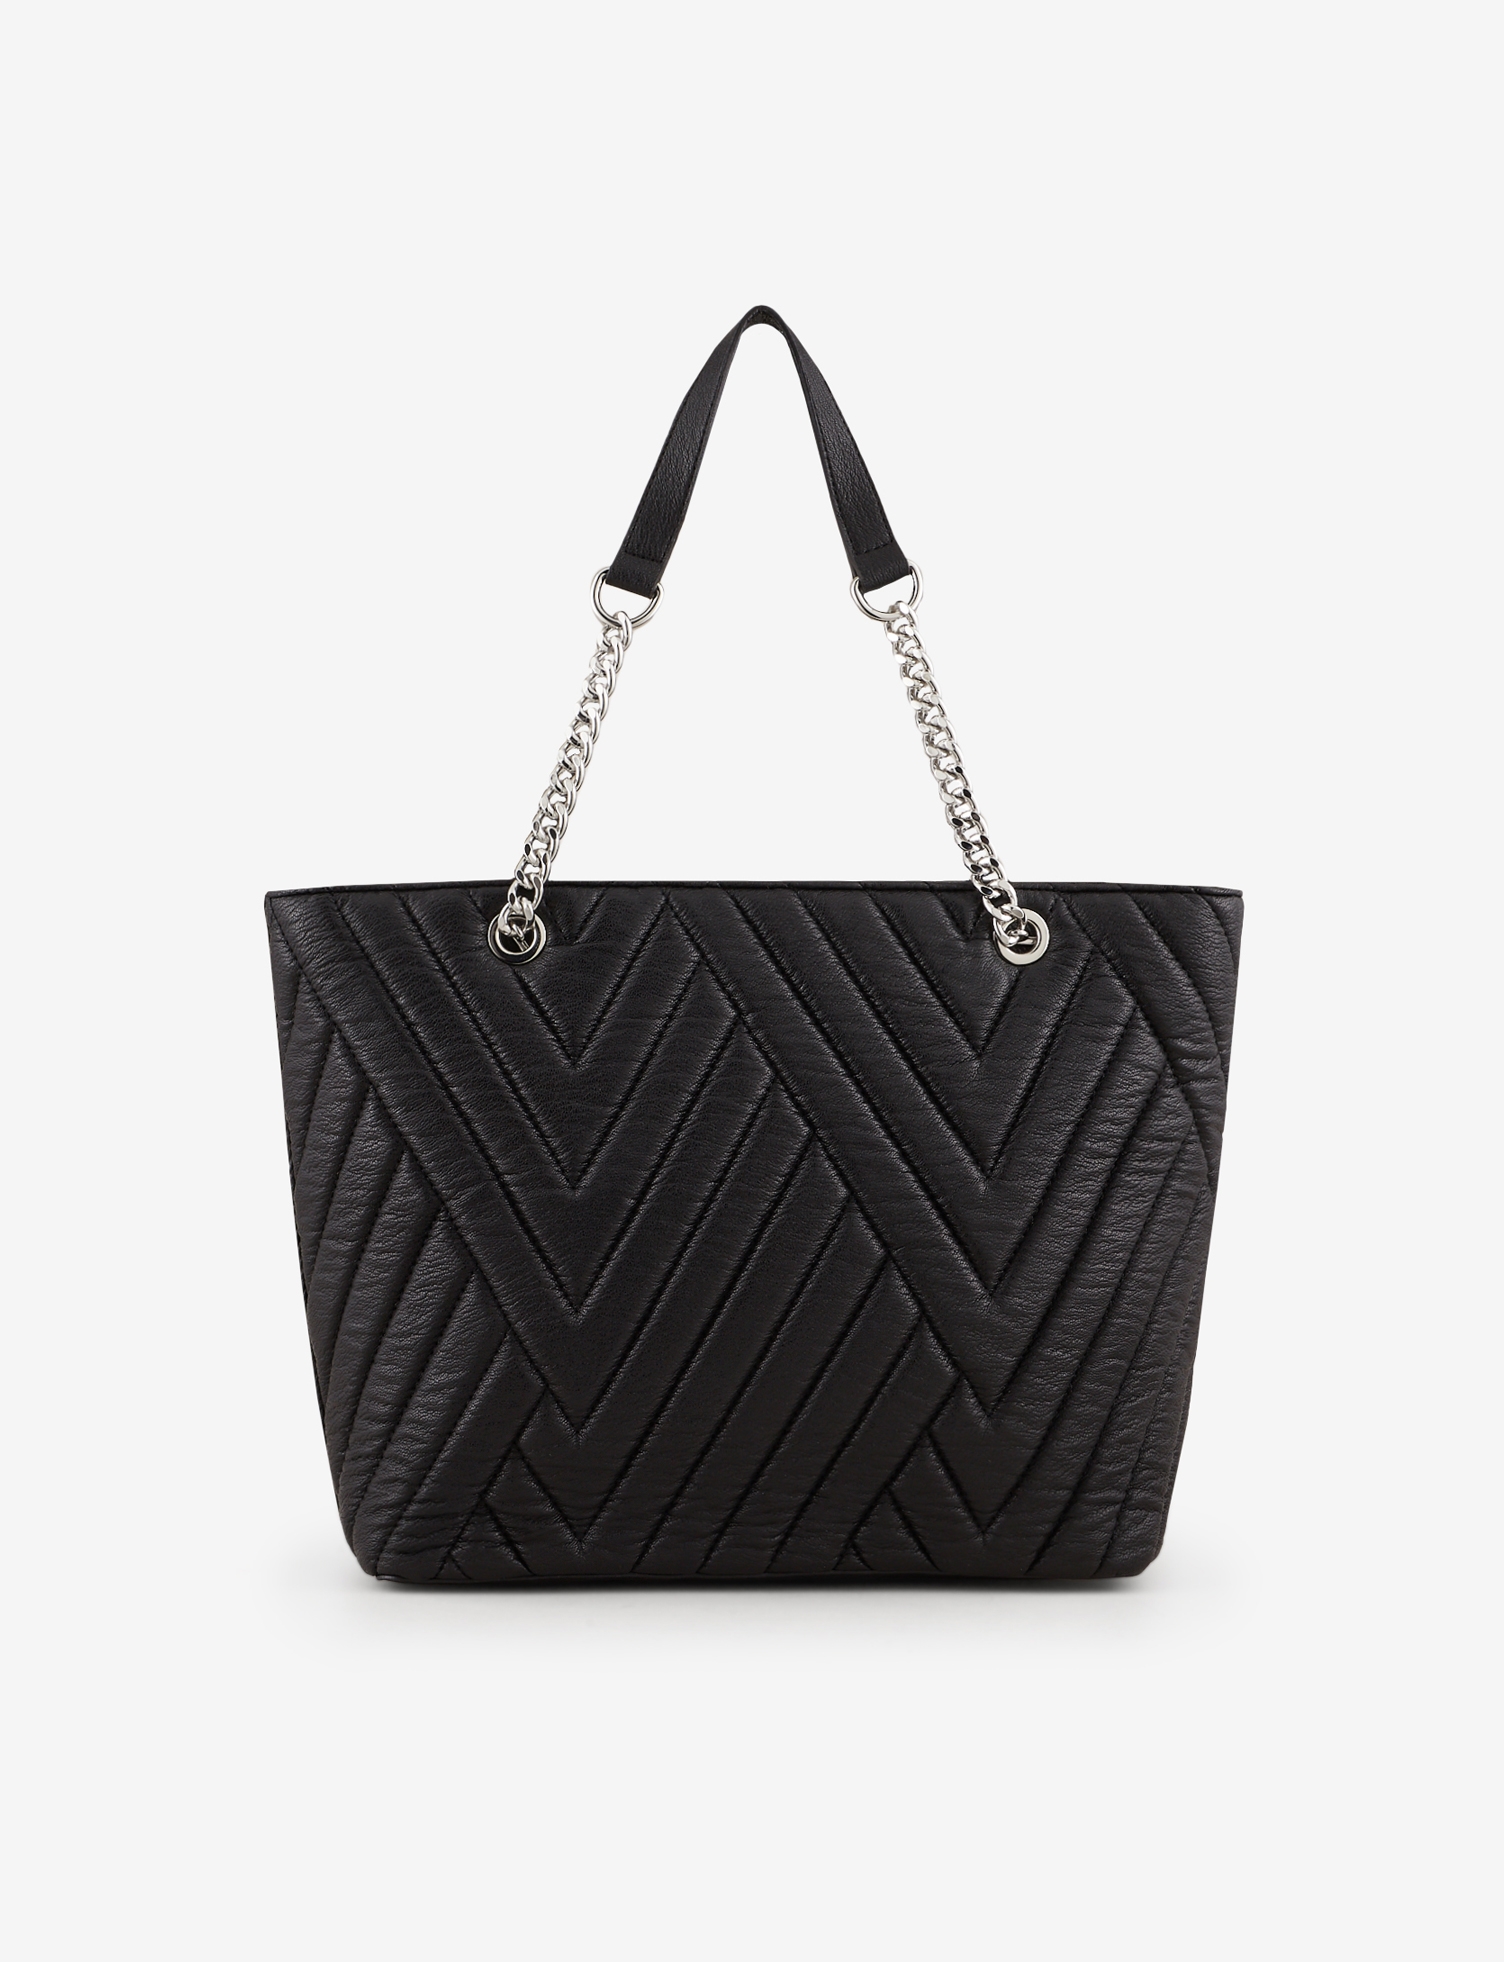 Women's Emporio Armani Tote Bags Online – Farfetch